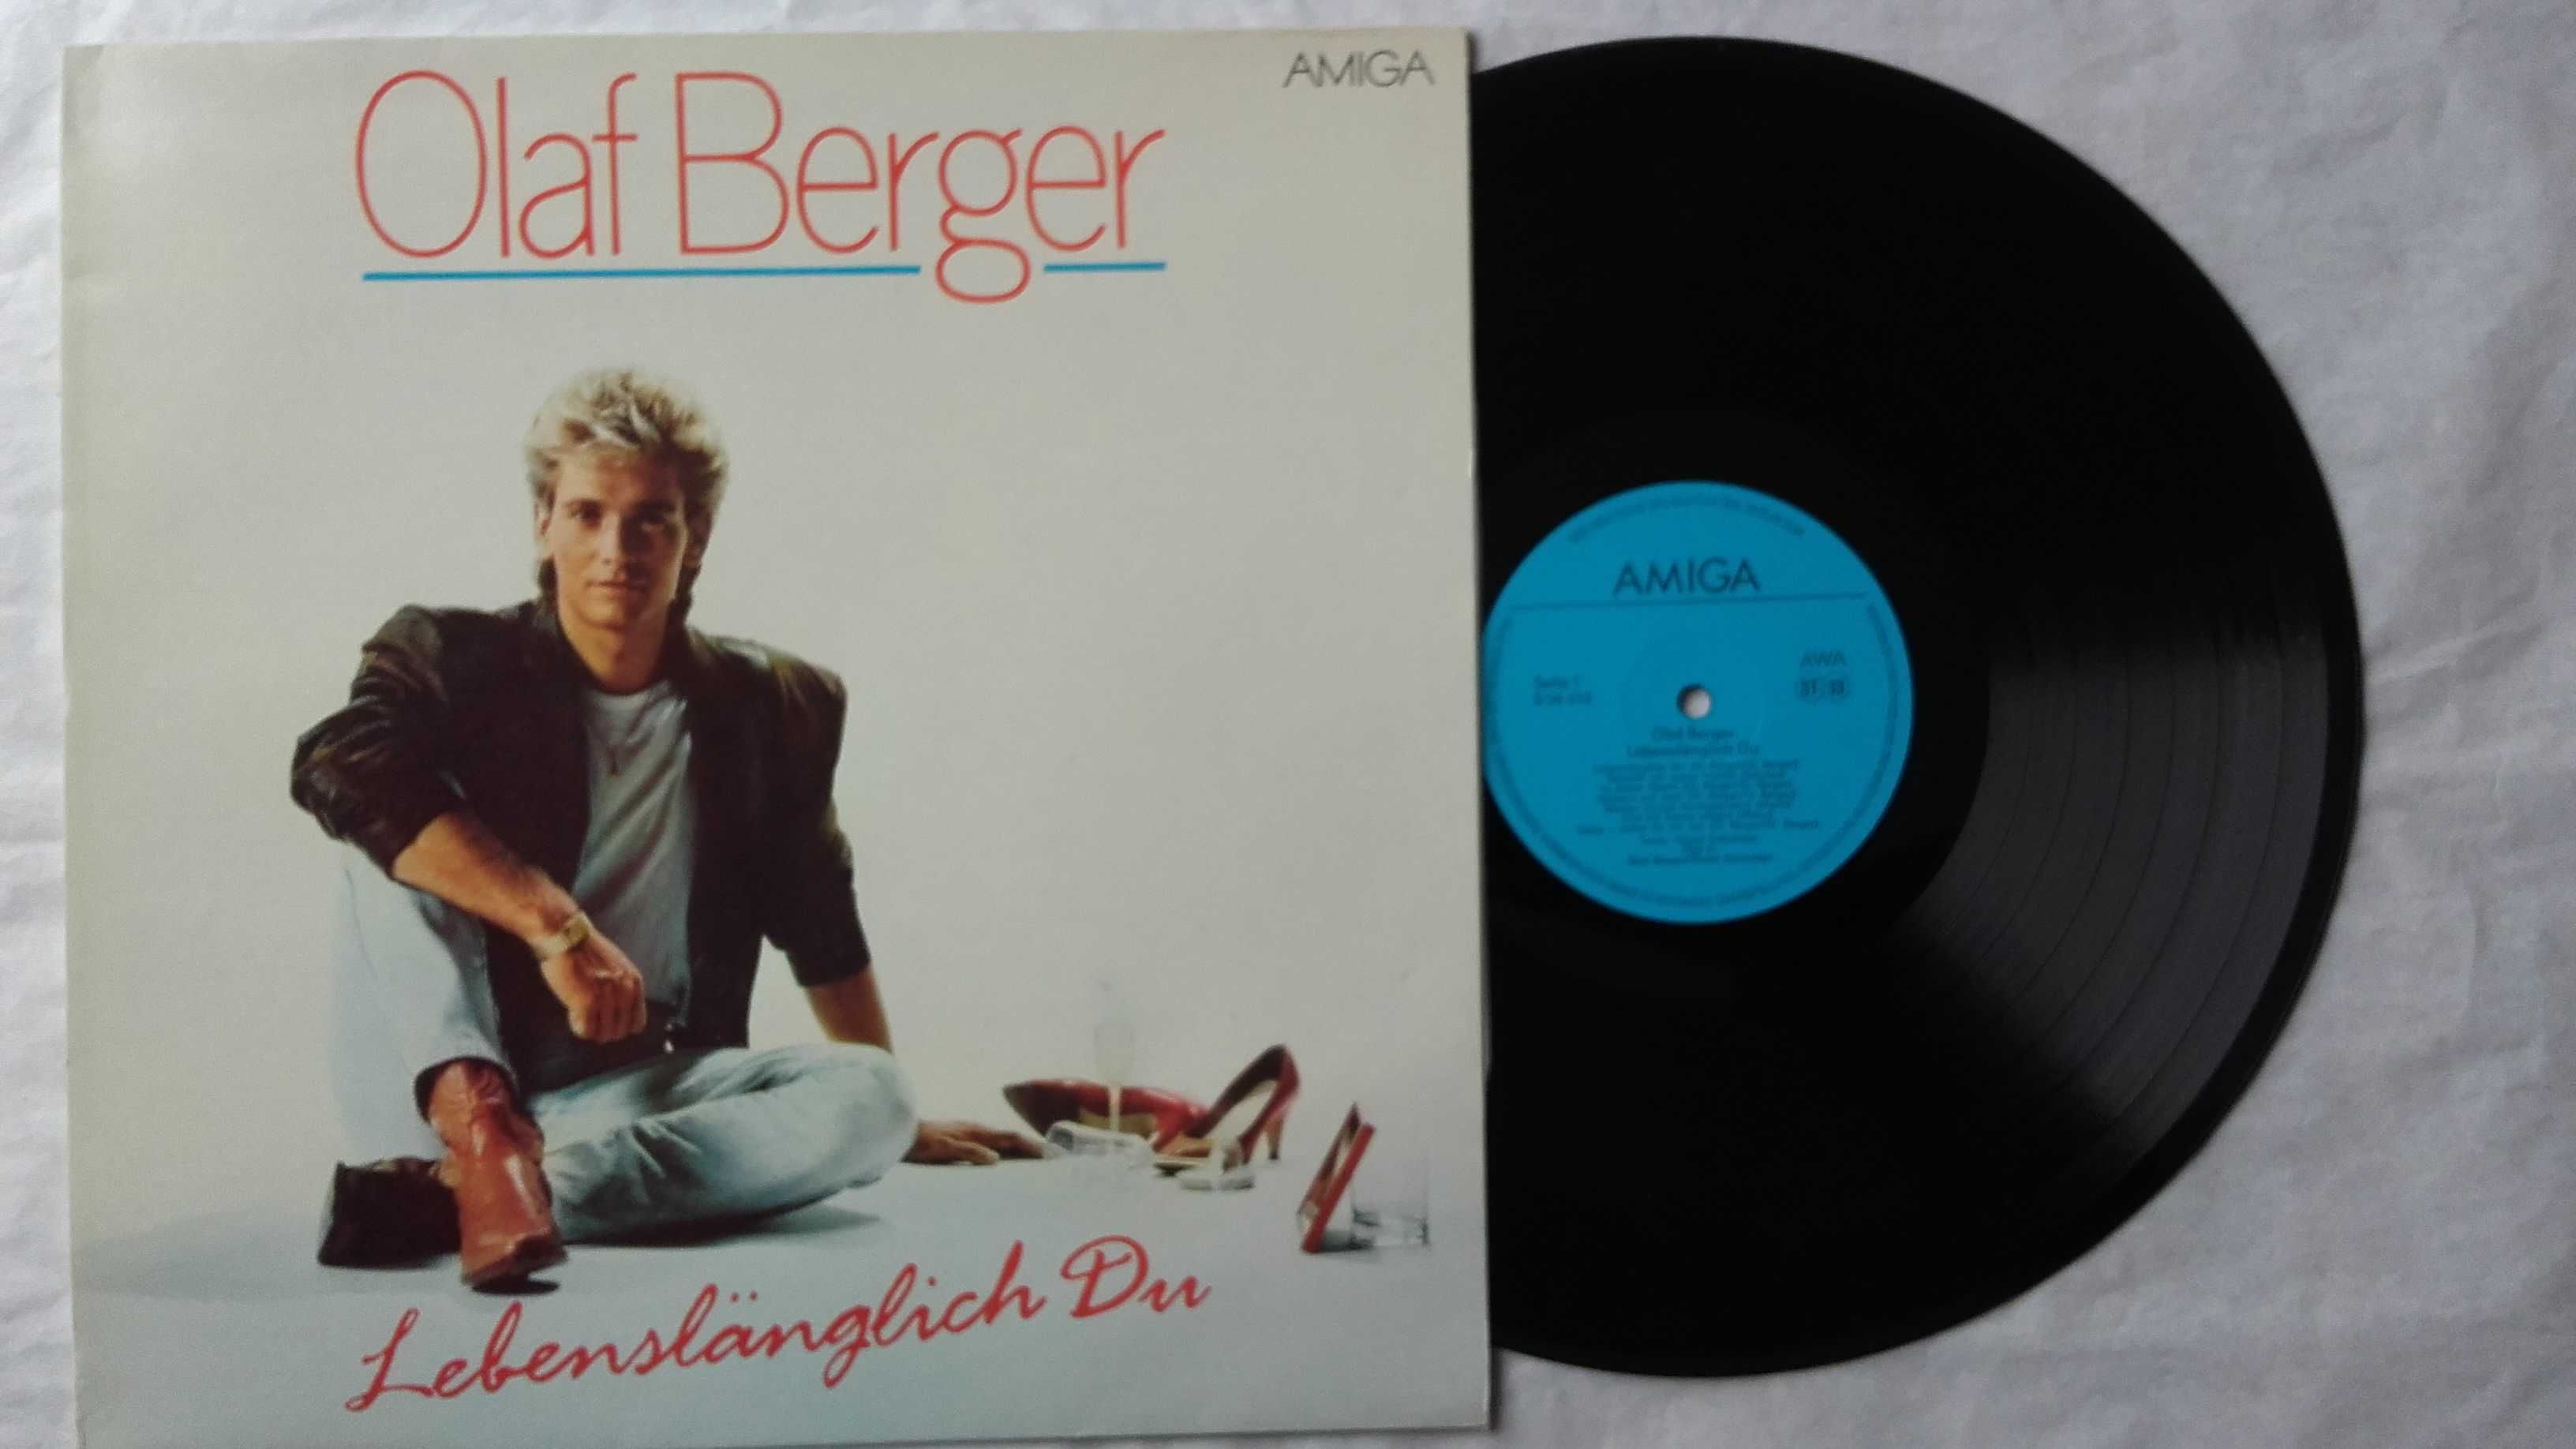 Płyta Olaf Berger winyl 1989 r.